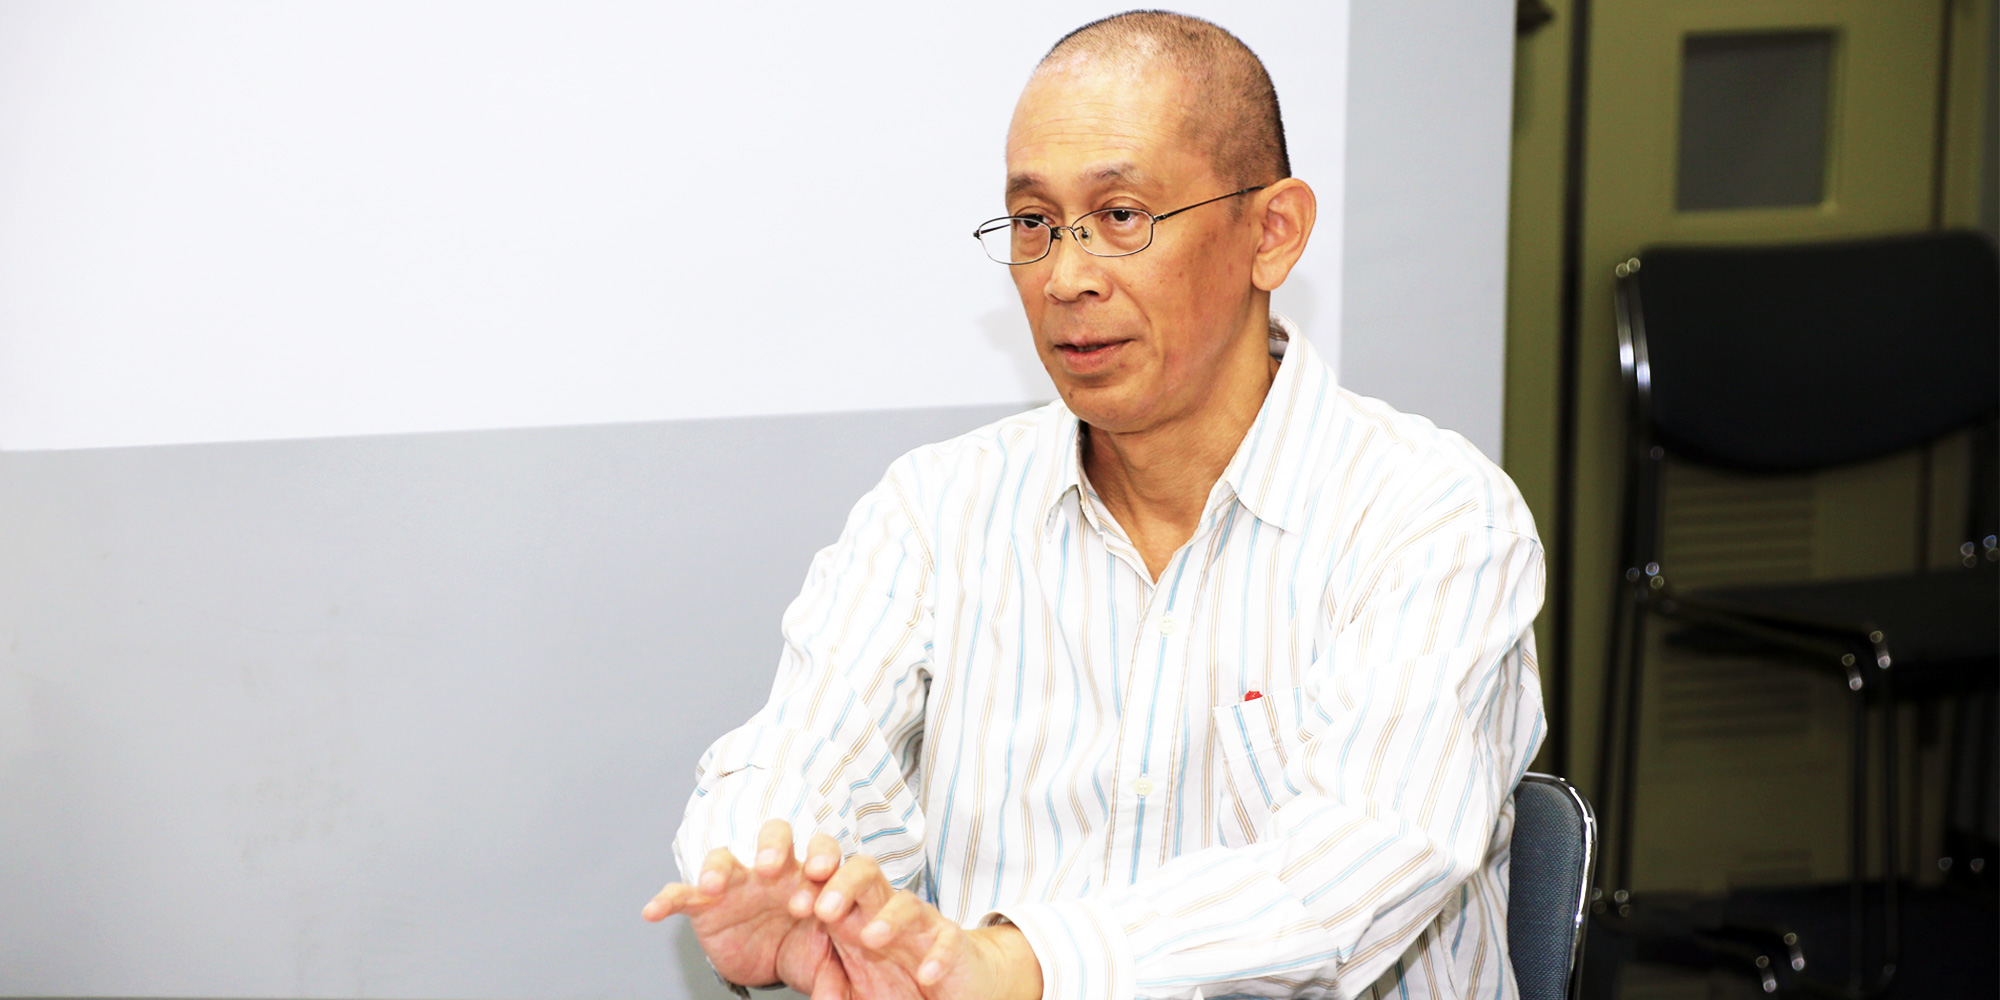 Yoshihiko Takano